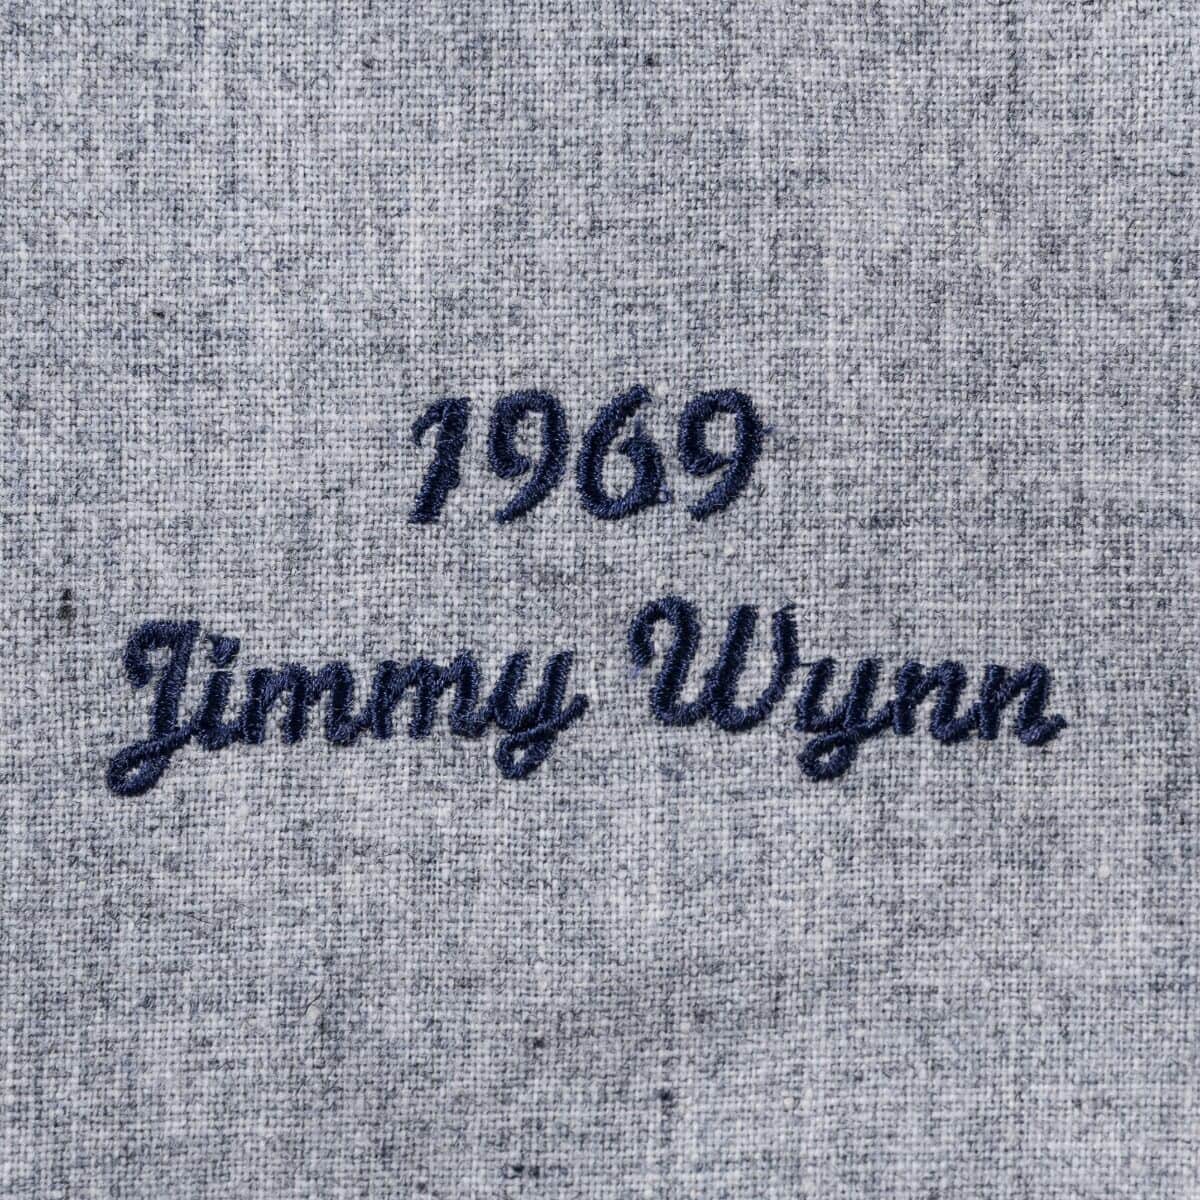 Authentic Jersey Houston Astros Road 1969 Jimmy Wynn – Super Fan Gear Box